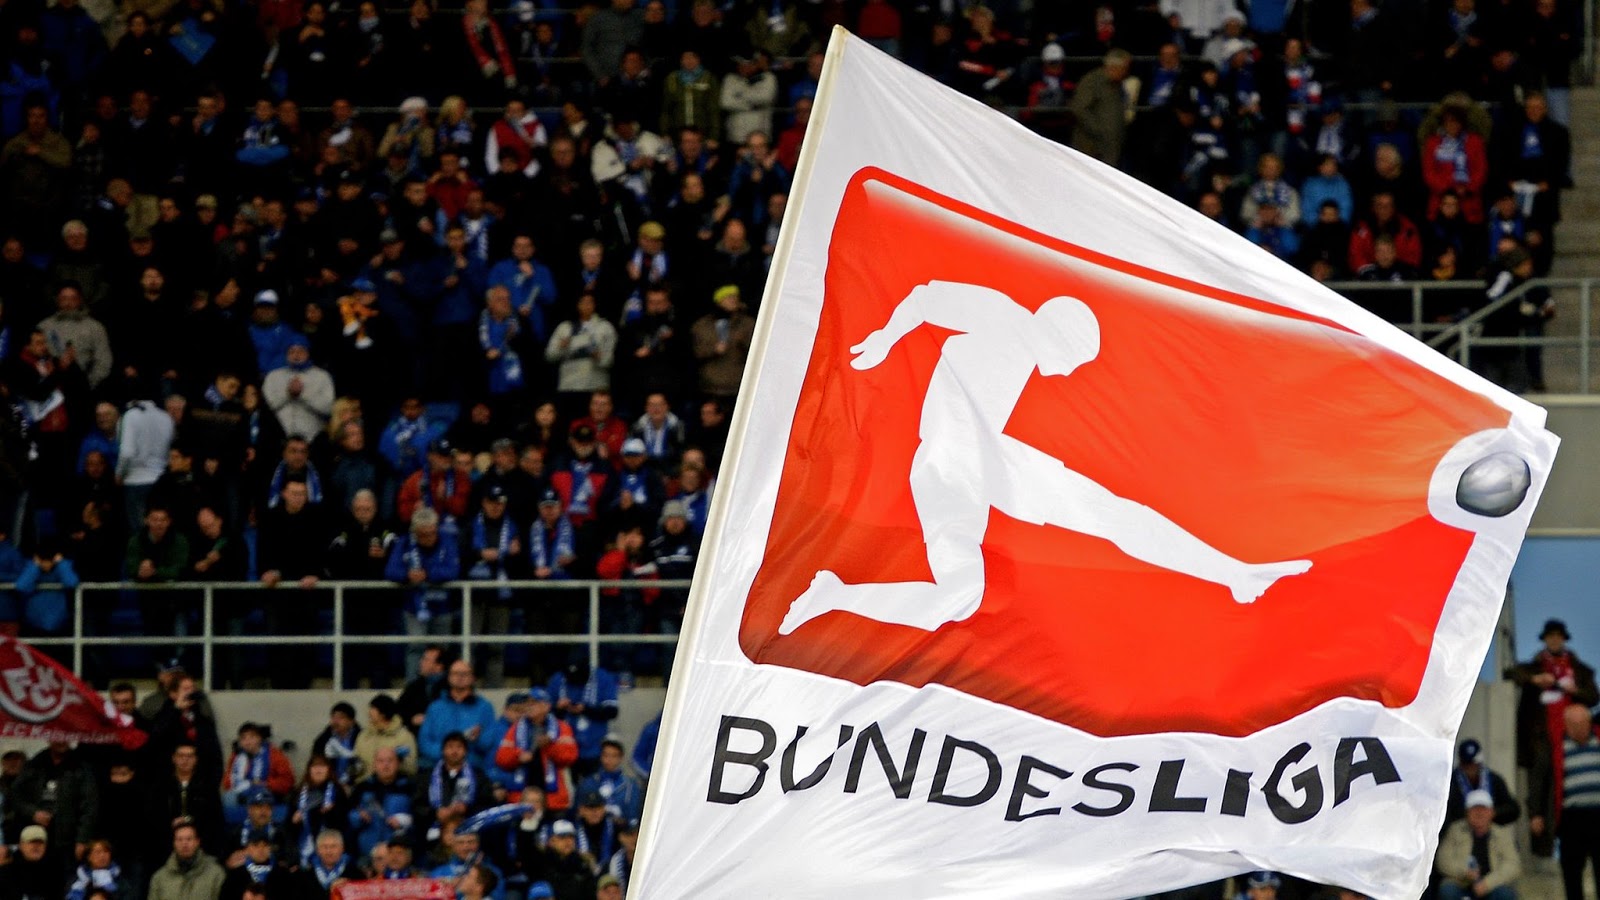 Os melhores jogos online para os fãs de futebol - Alemanha Futebol Clube